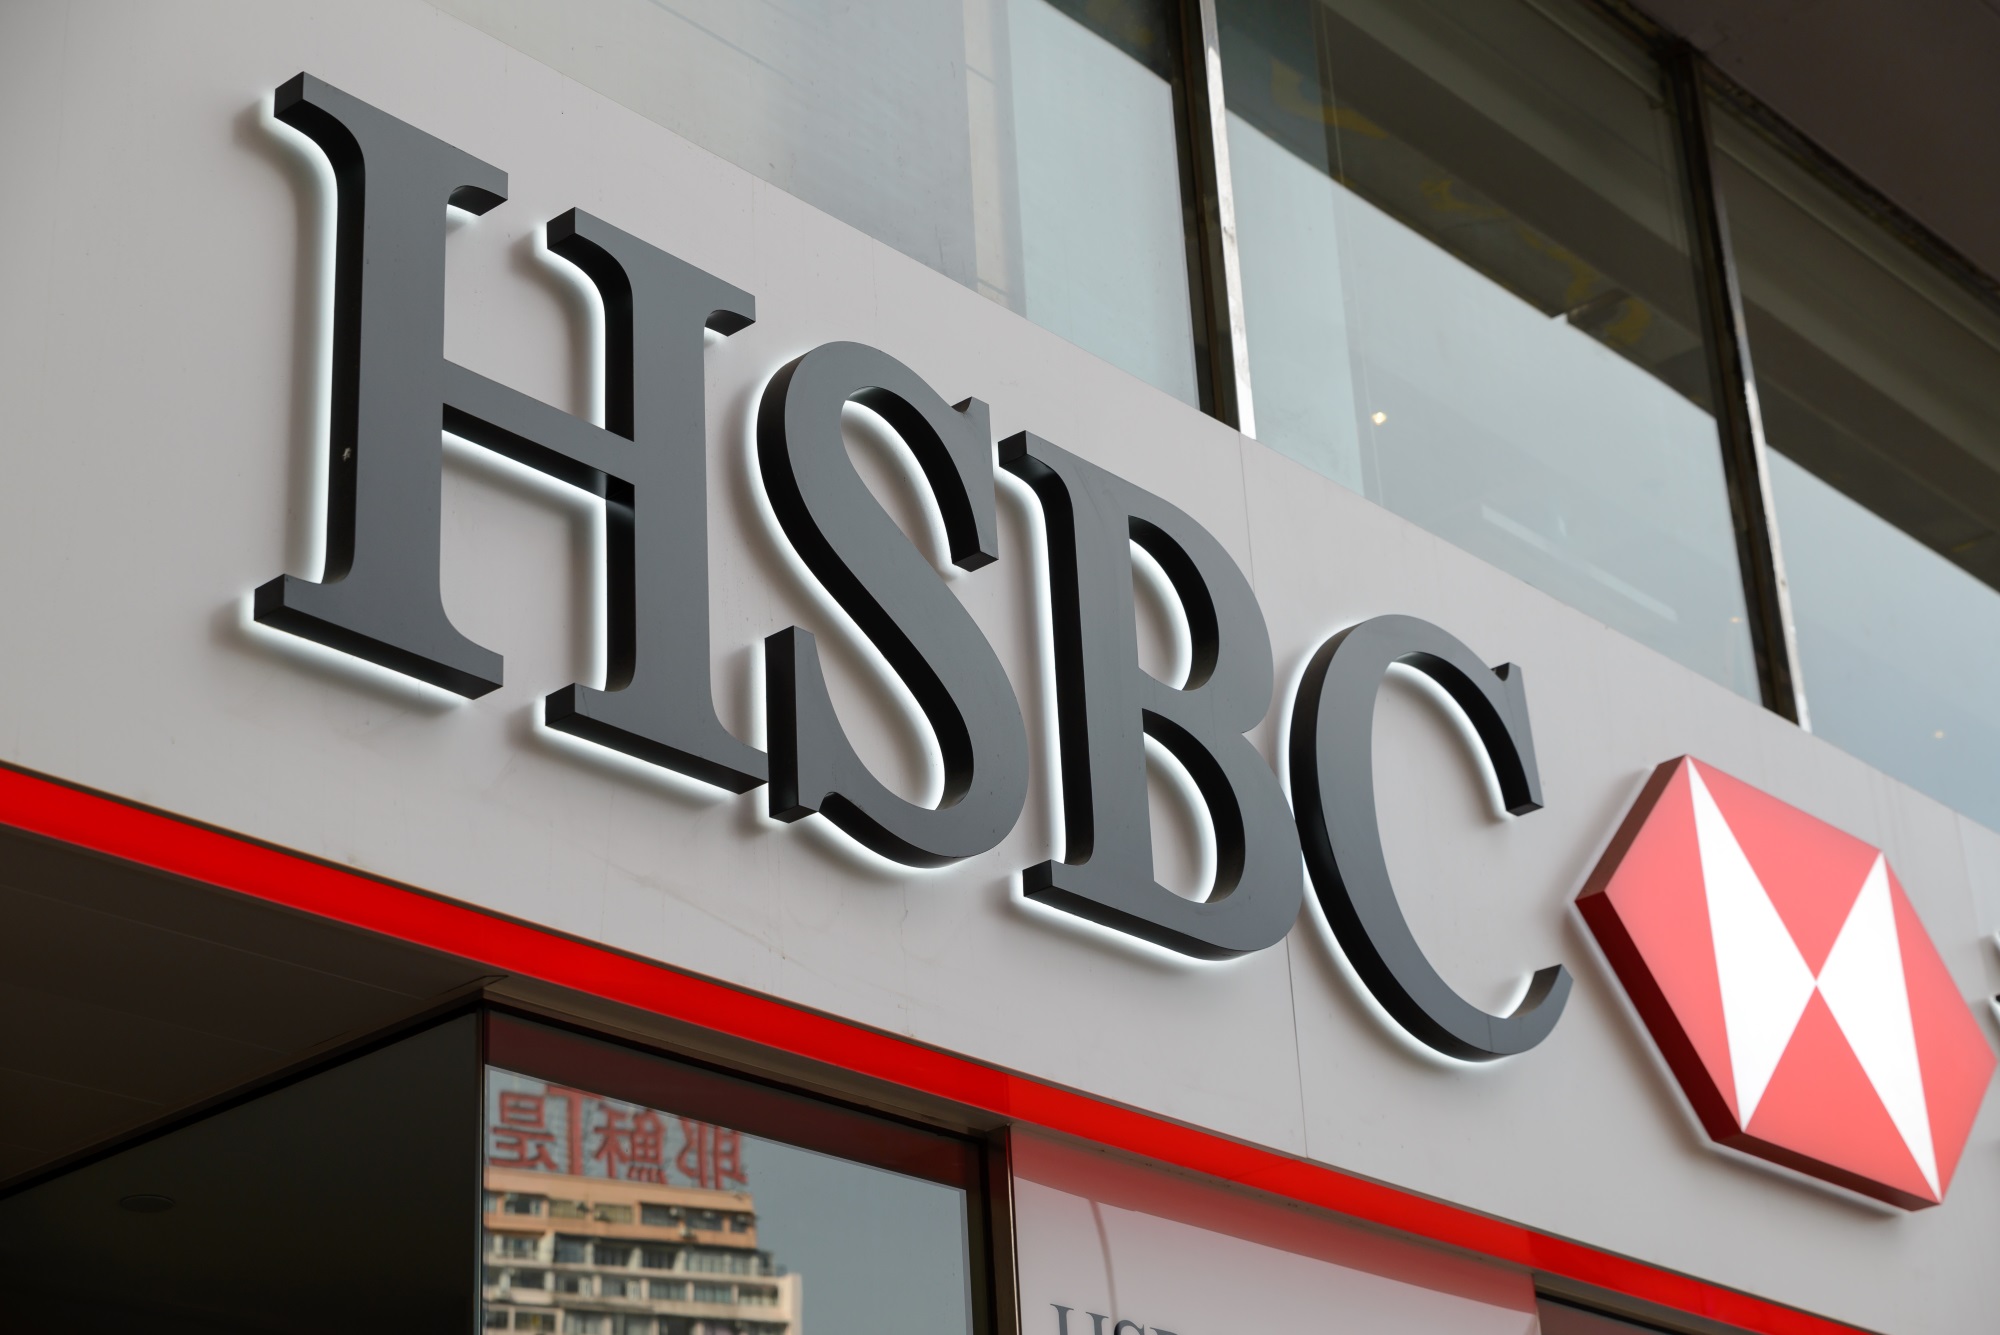 HSBC jest jednym z największych banków na świecie (fot. Shutterstock)